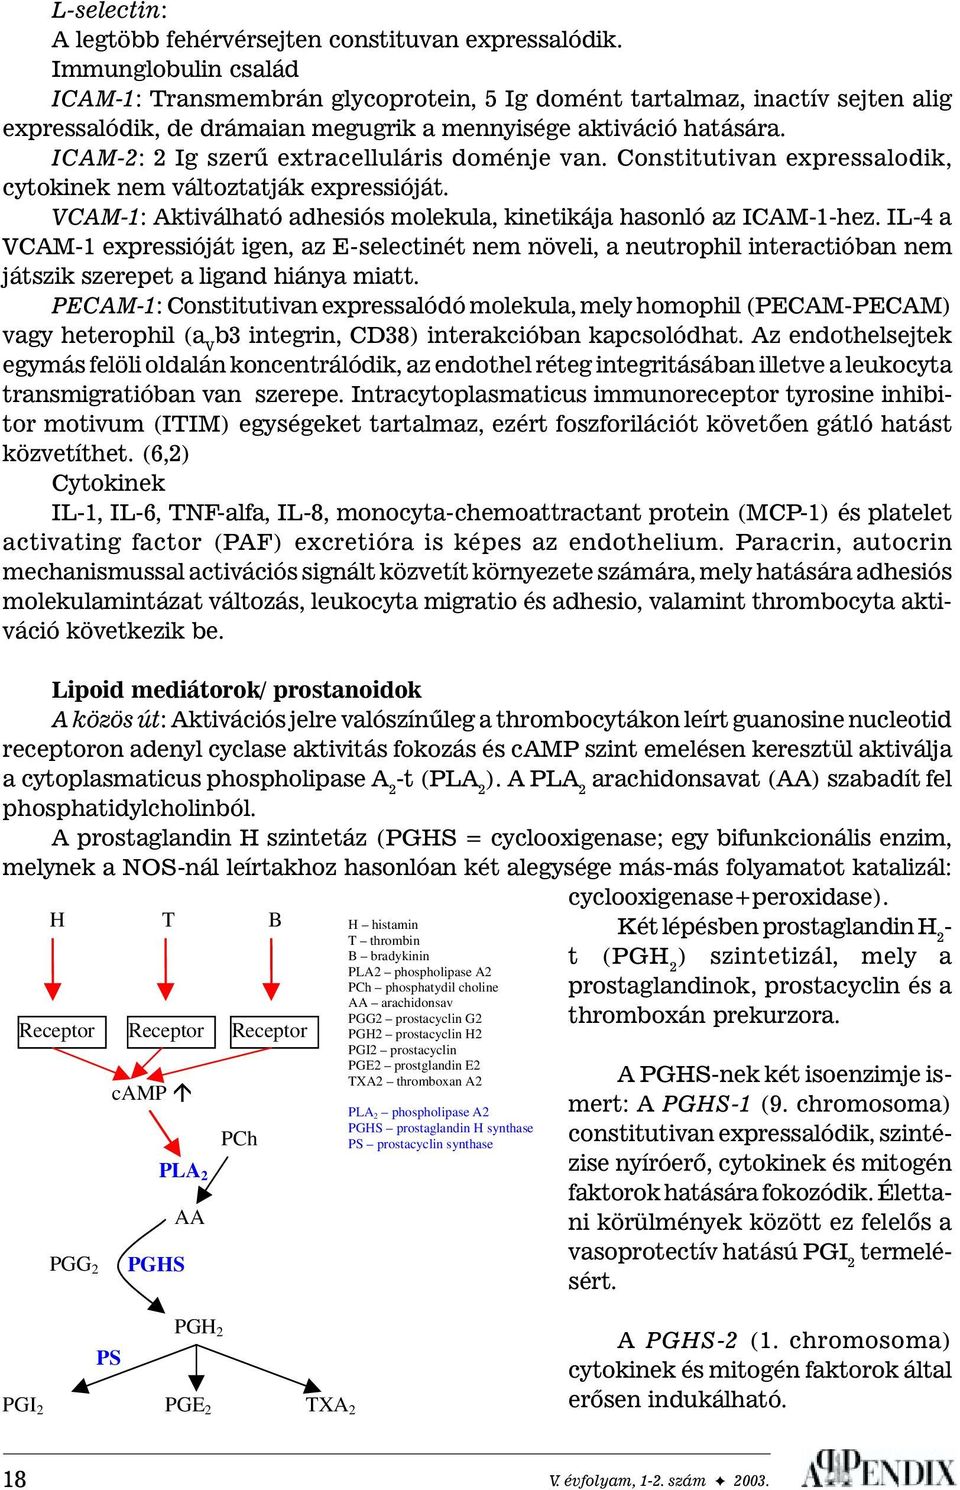 ICAM-2: 2 Ig szerû extracelluláris doménje van. Constitutivan expressalodik, cytokinek nem változtatják expressióját. VCAM-1: Aktiválható adhesiós molekula, kinetikája hasonló az ICAM-1-hez.